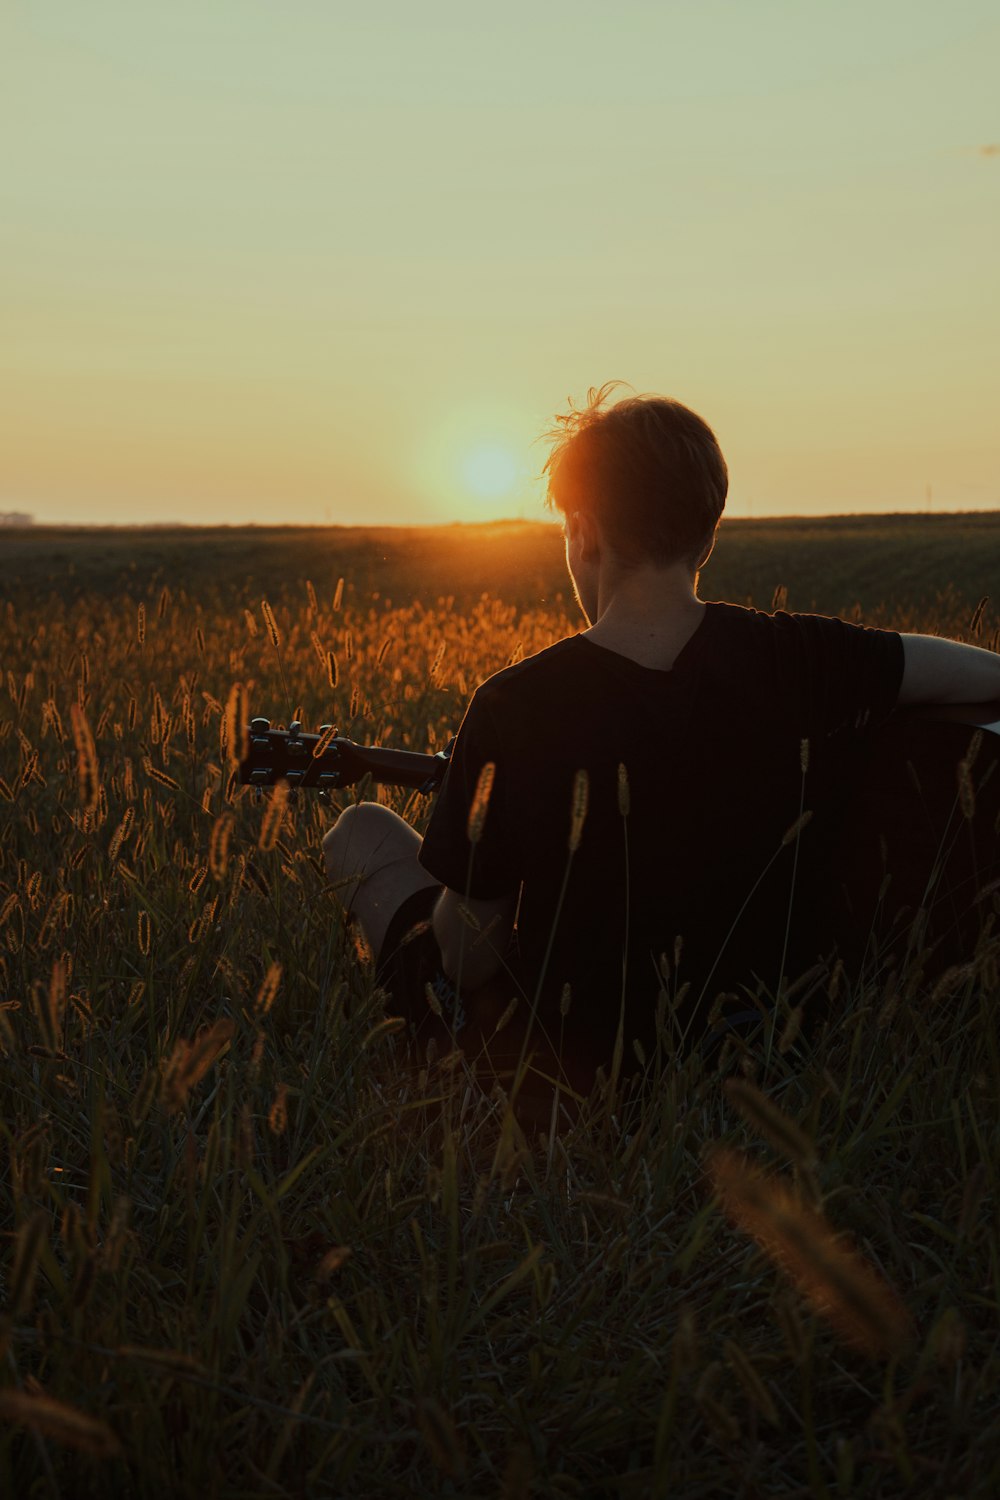 ギターを持って野原に座っている人